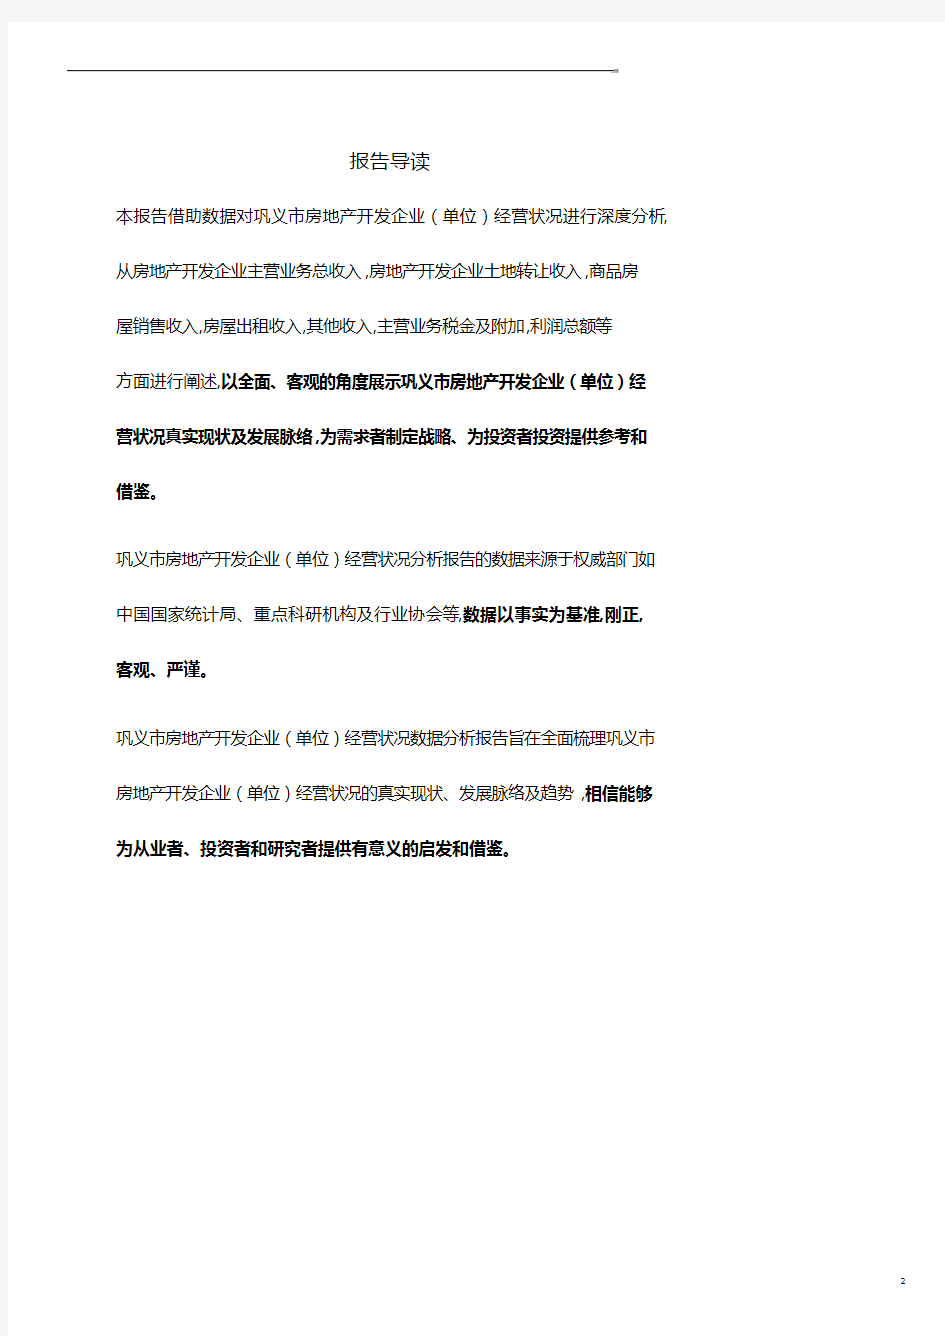 河南省巩义市房地产开发企业(单位)经营状况数据分析报告2019版.pdf